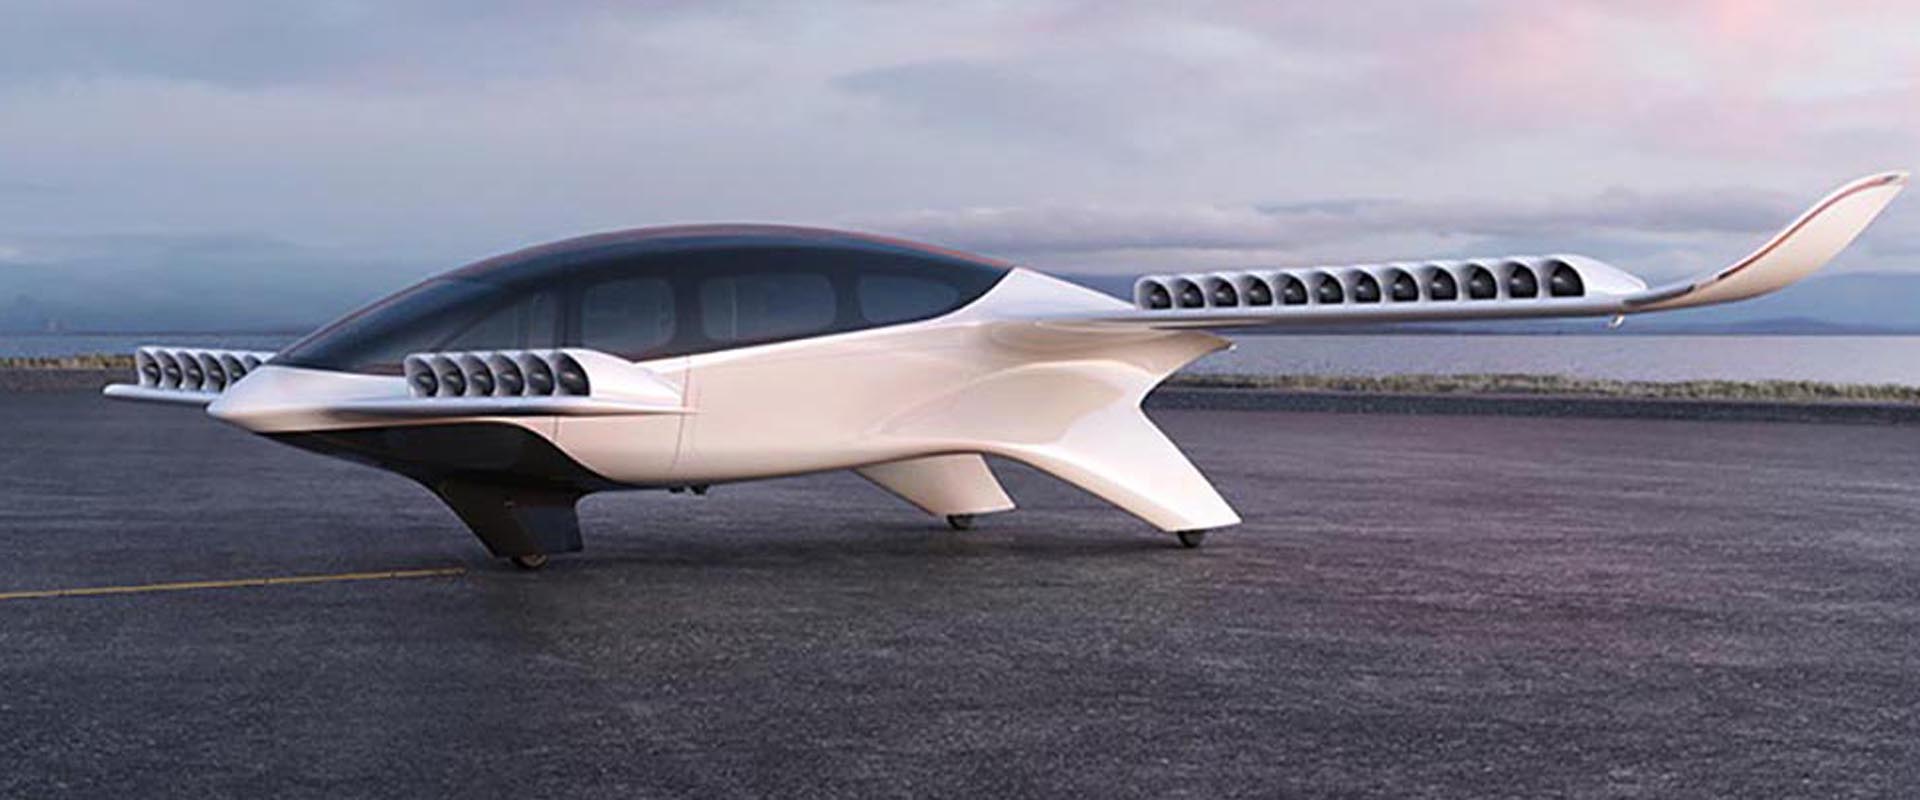 Empresa aérea planeja ter “carros voadores” no Brasil em 2025.